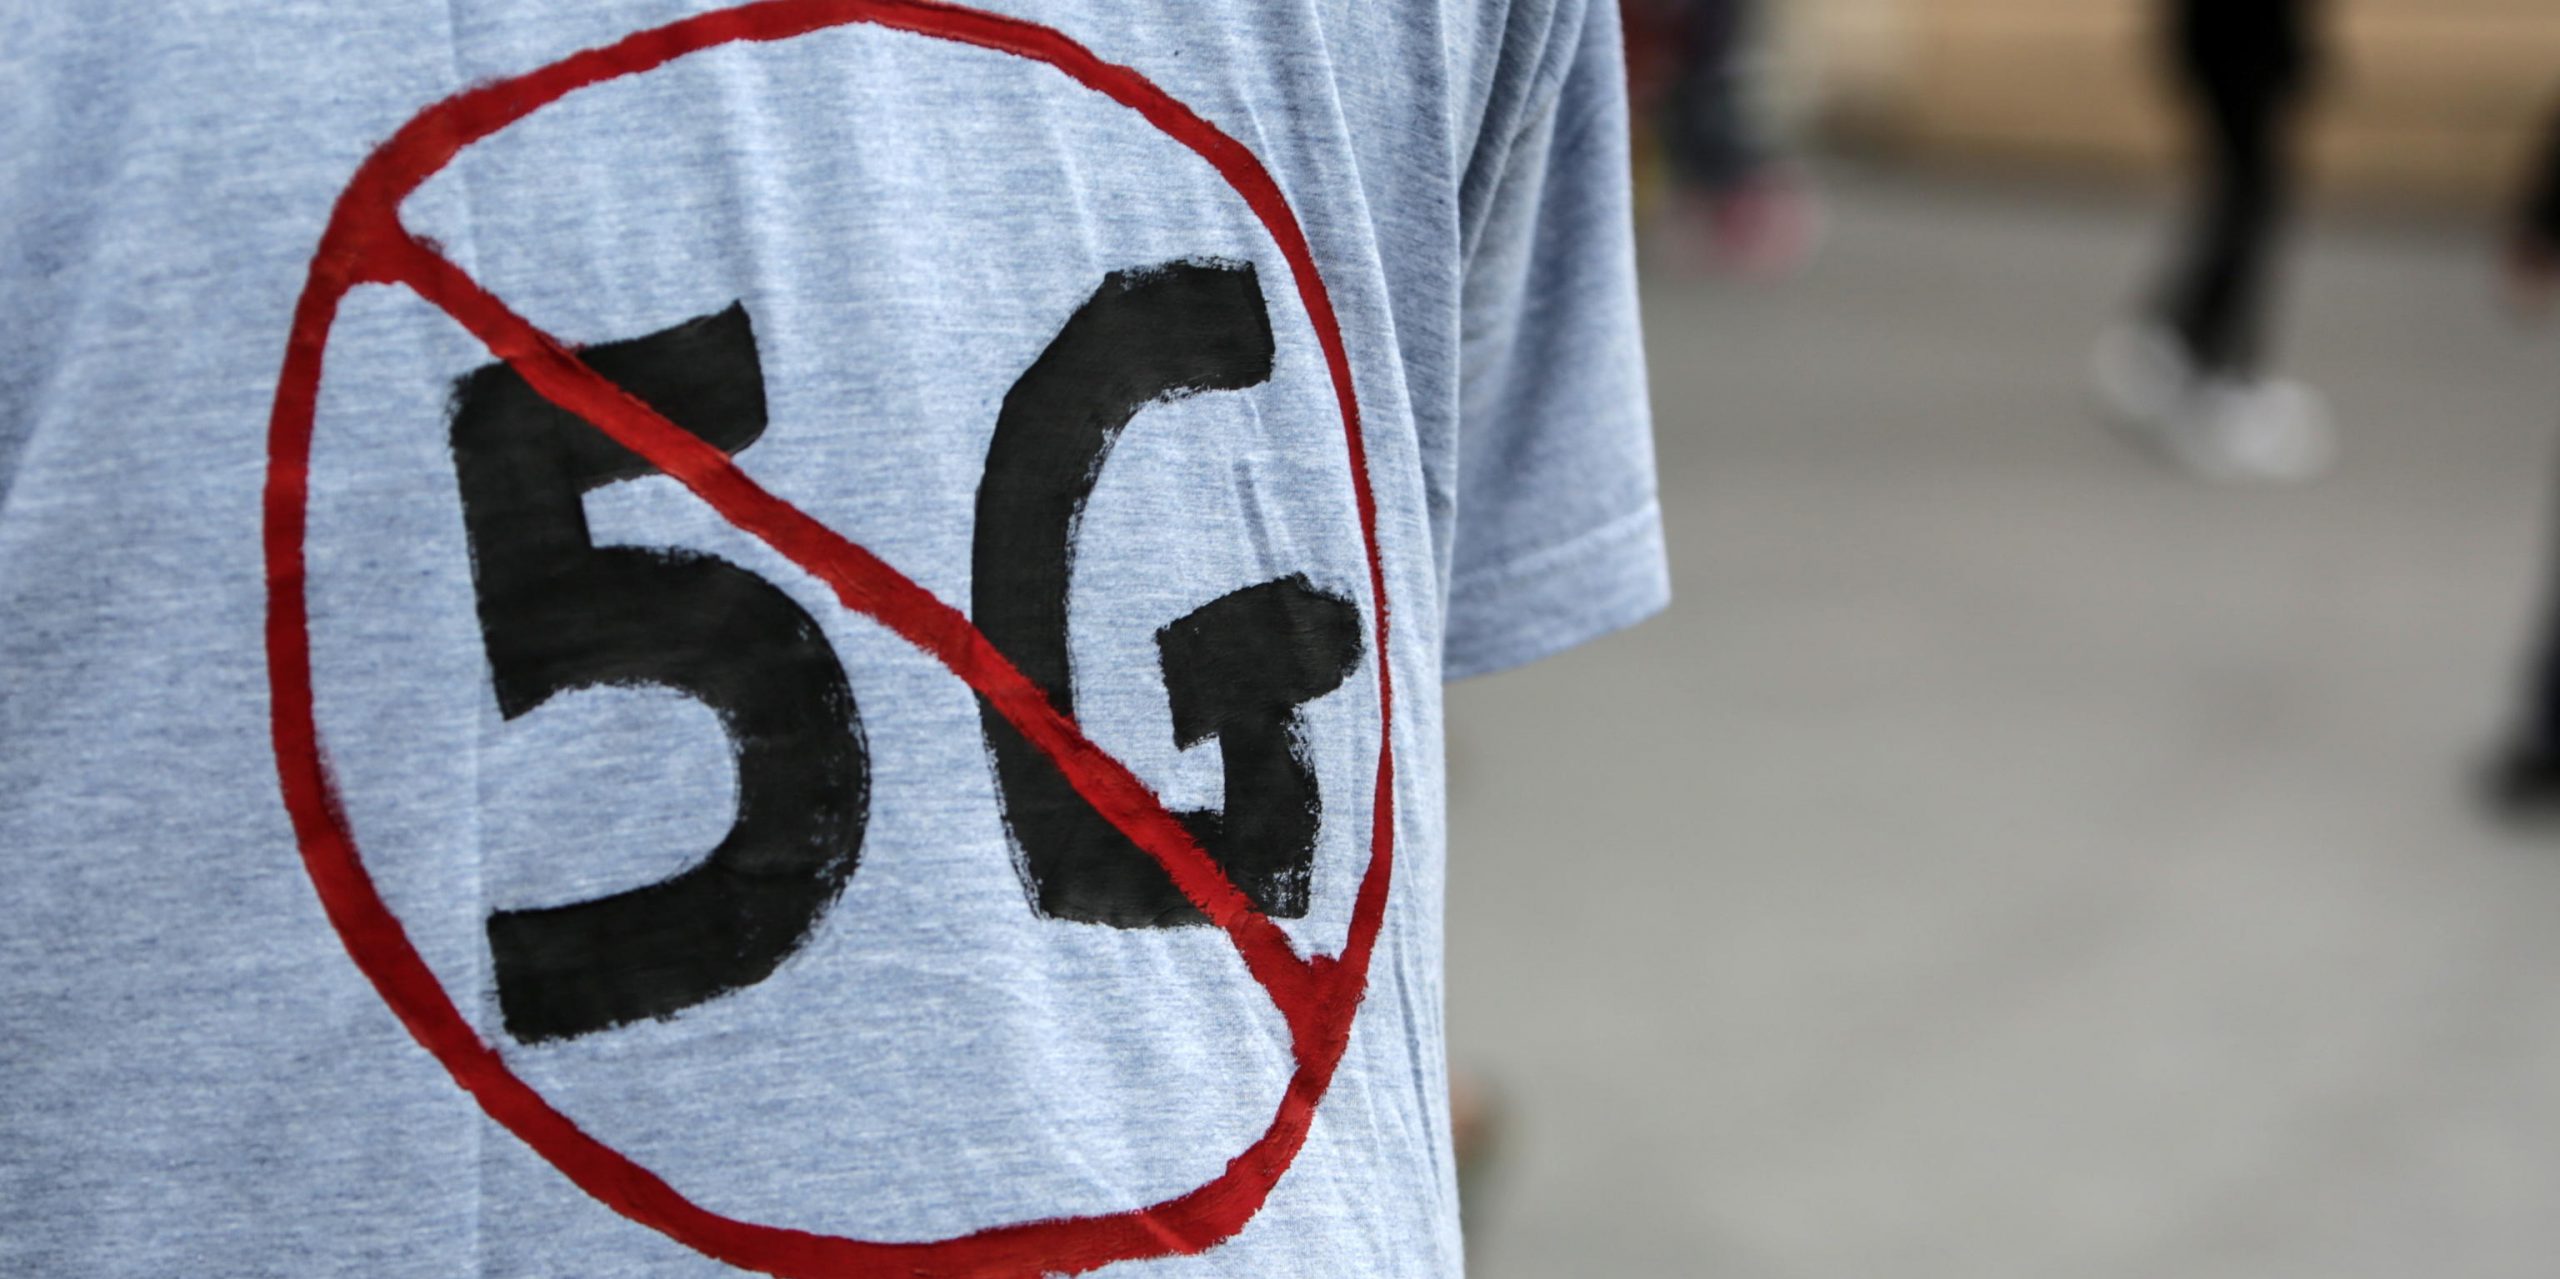 
La maglietta indossata da un attivista anti-5G durante una manifestazione alla stazione centrale di Bruxelles, in Belgio, il 4 luglio 2020 (EPA/Aris Oikonomou EPA-EFE/Aris Oikonomou)